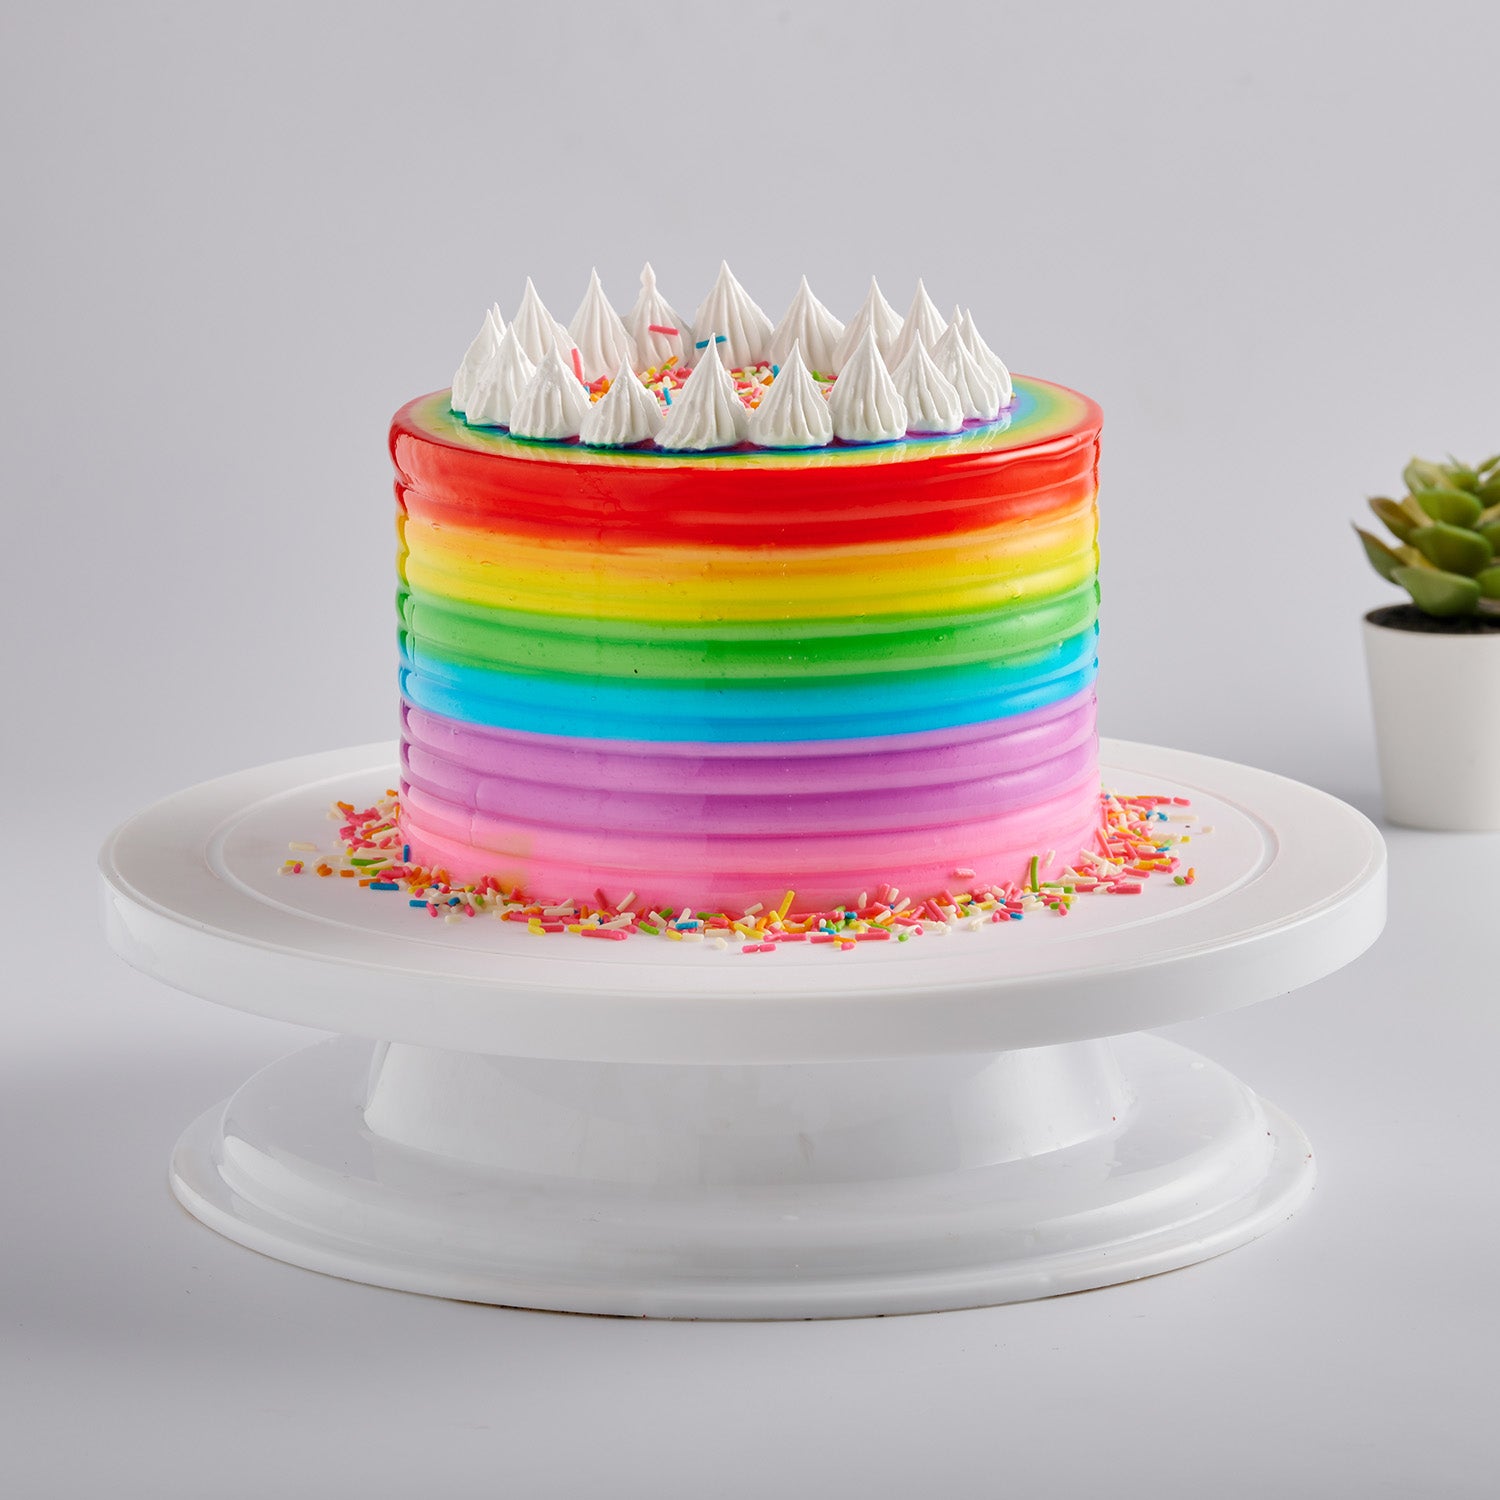 Buy Rainbow Cake Online in India